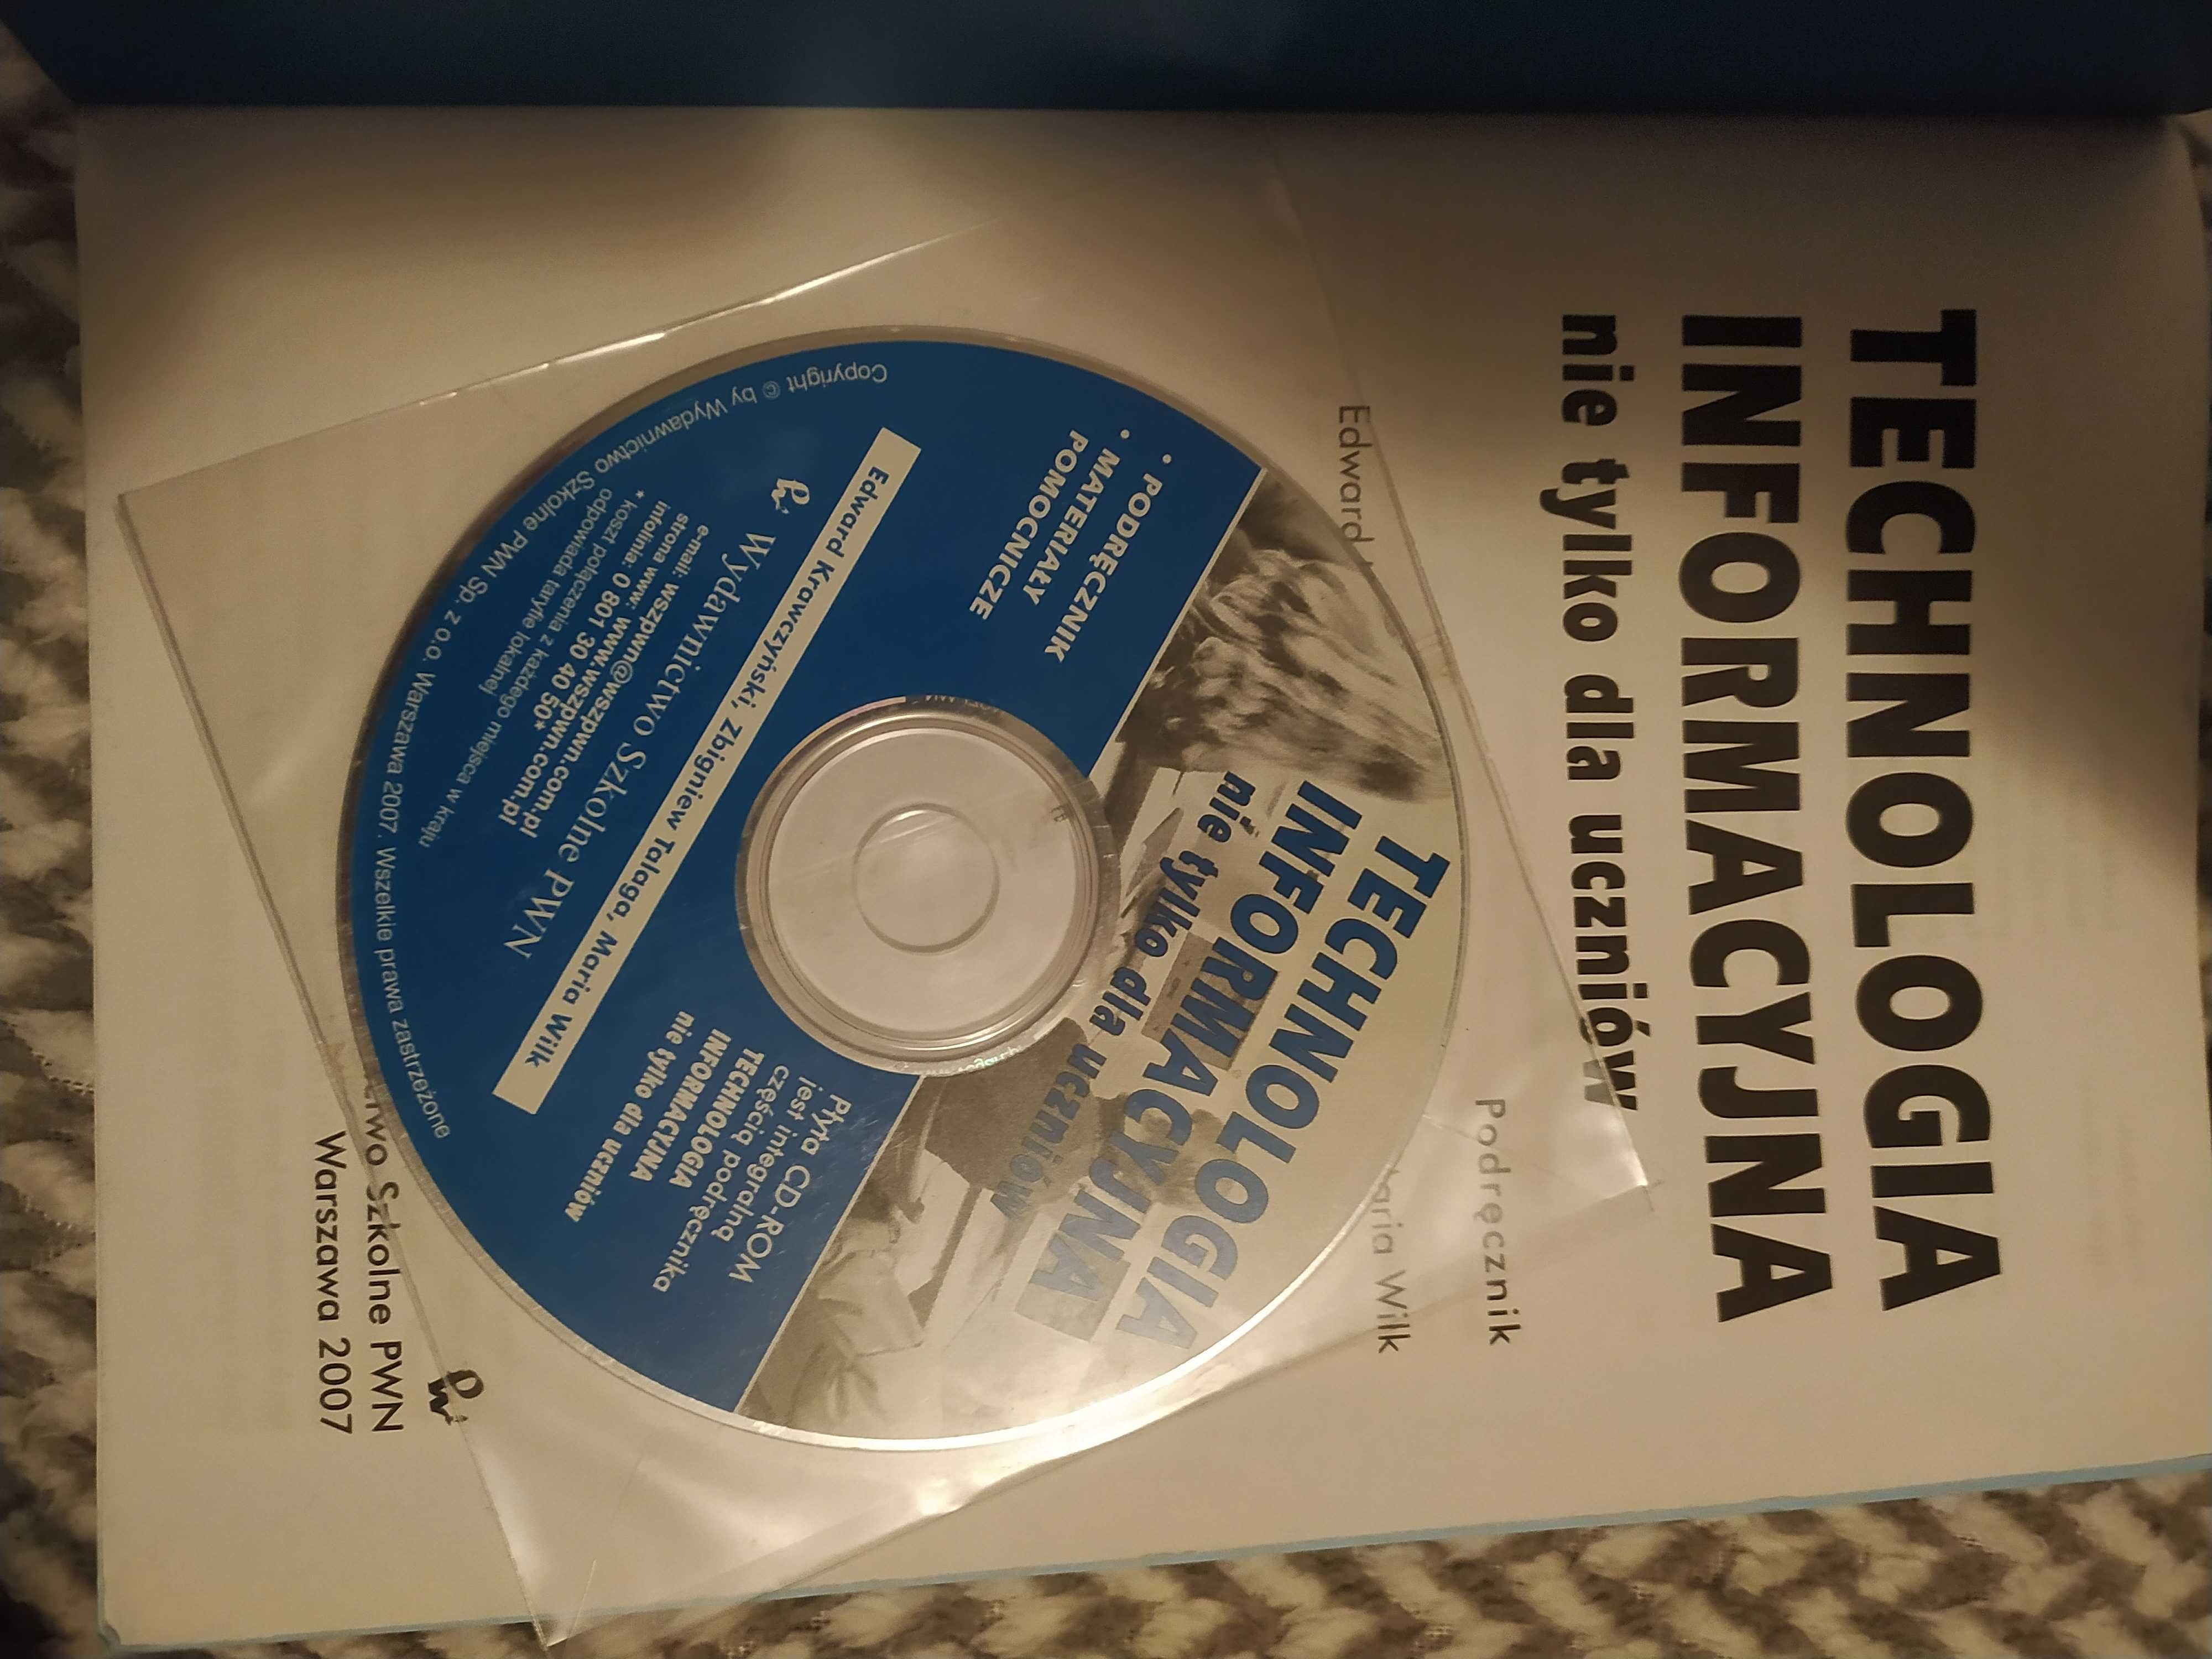 Książka podręcznik Technologia Informacyjna z płytą CD